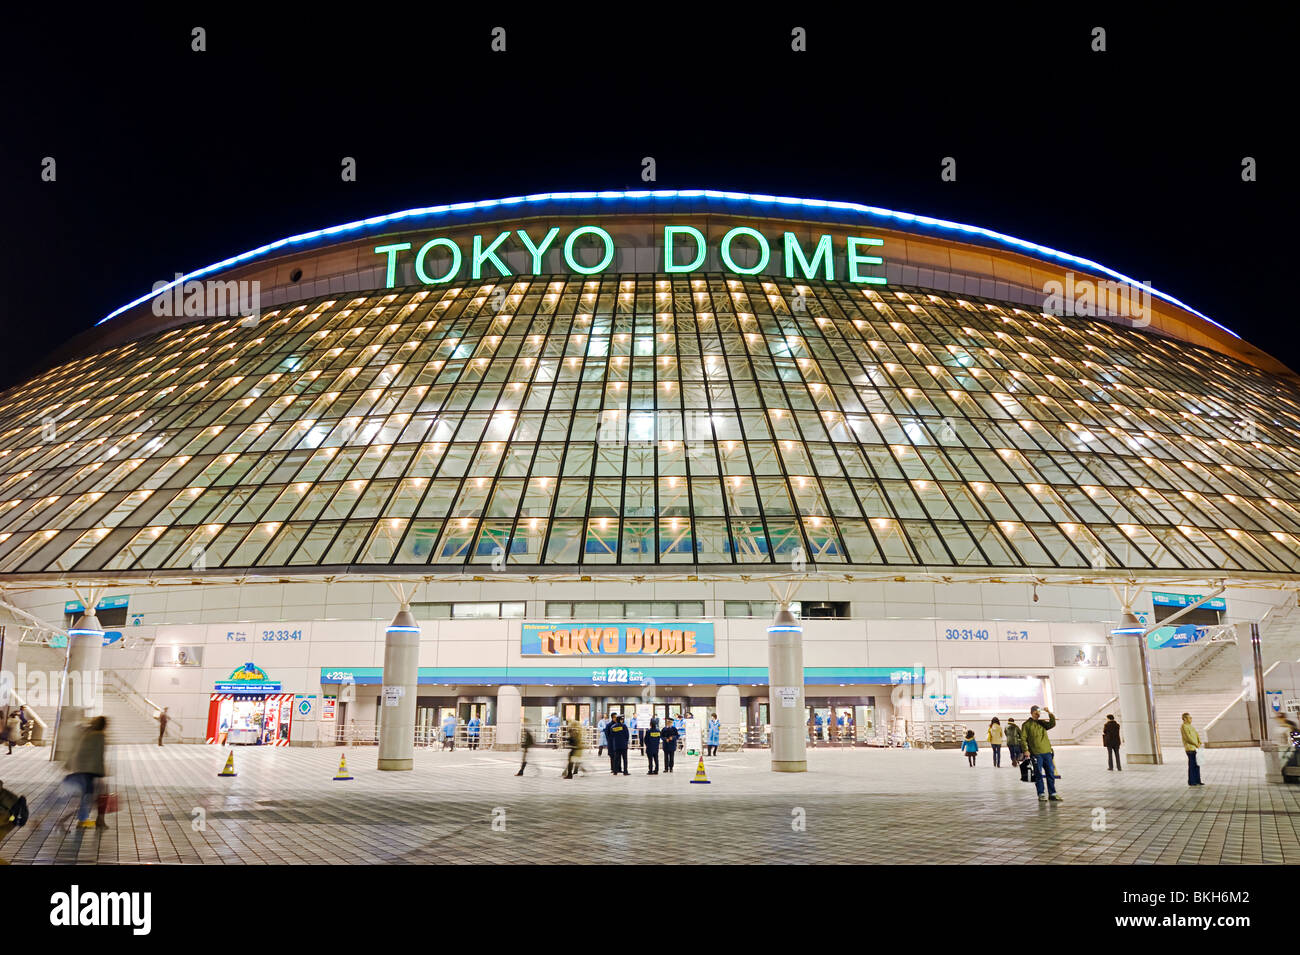 Dome Architecture Stock Photo